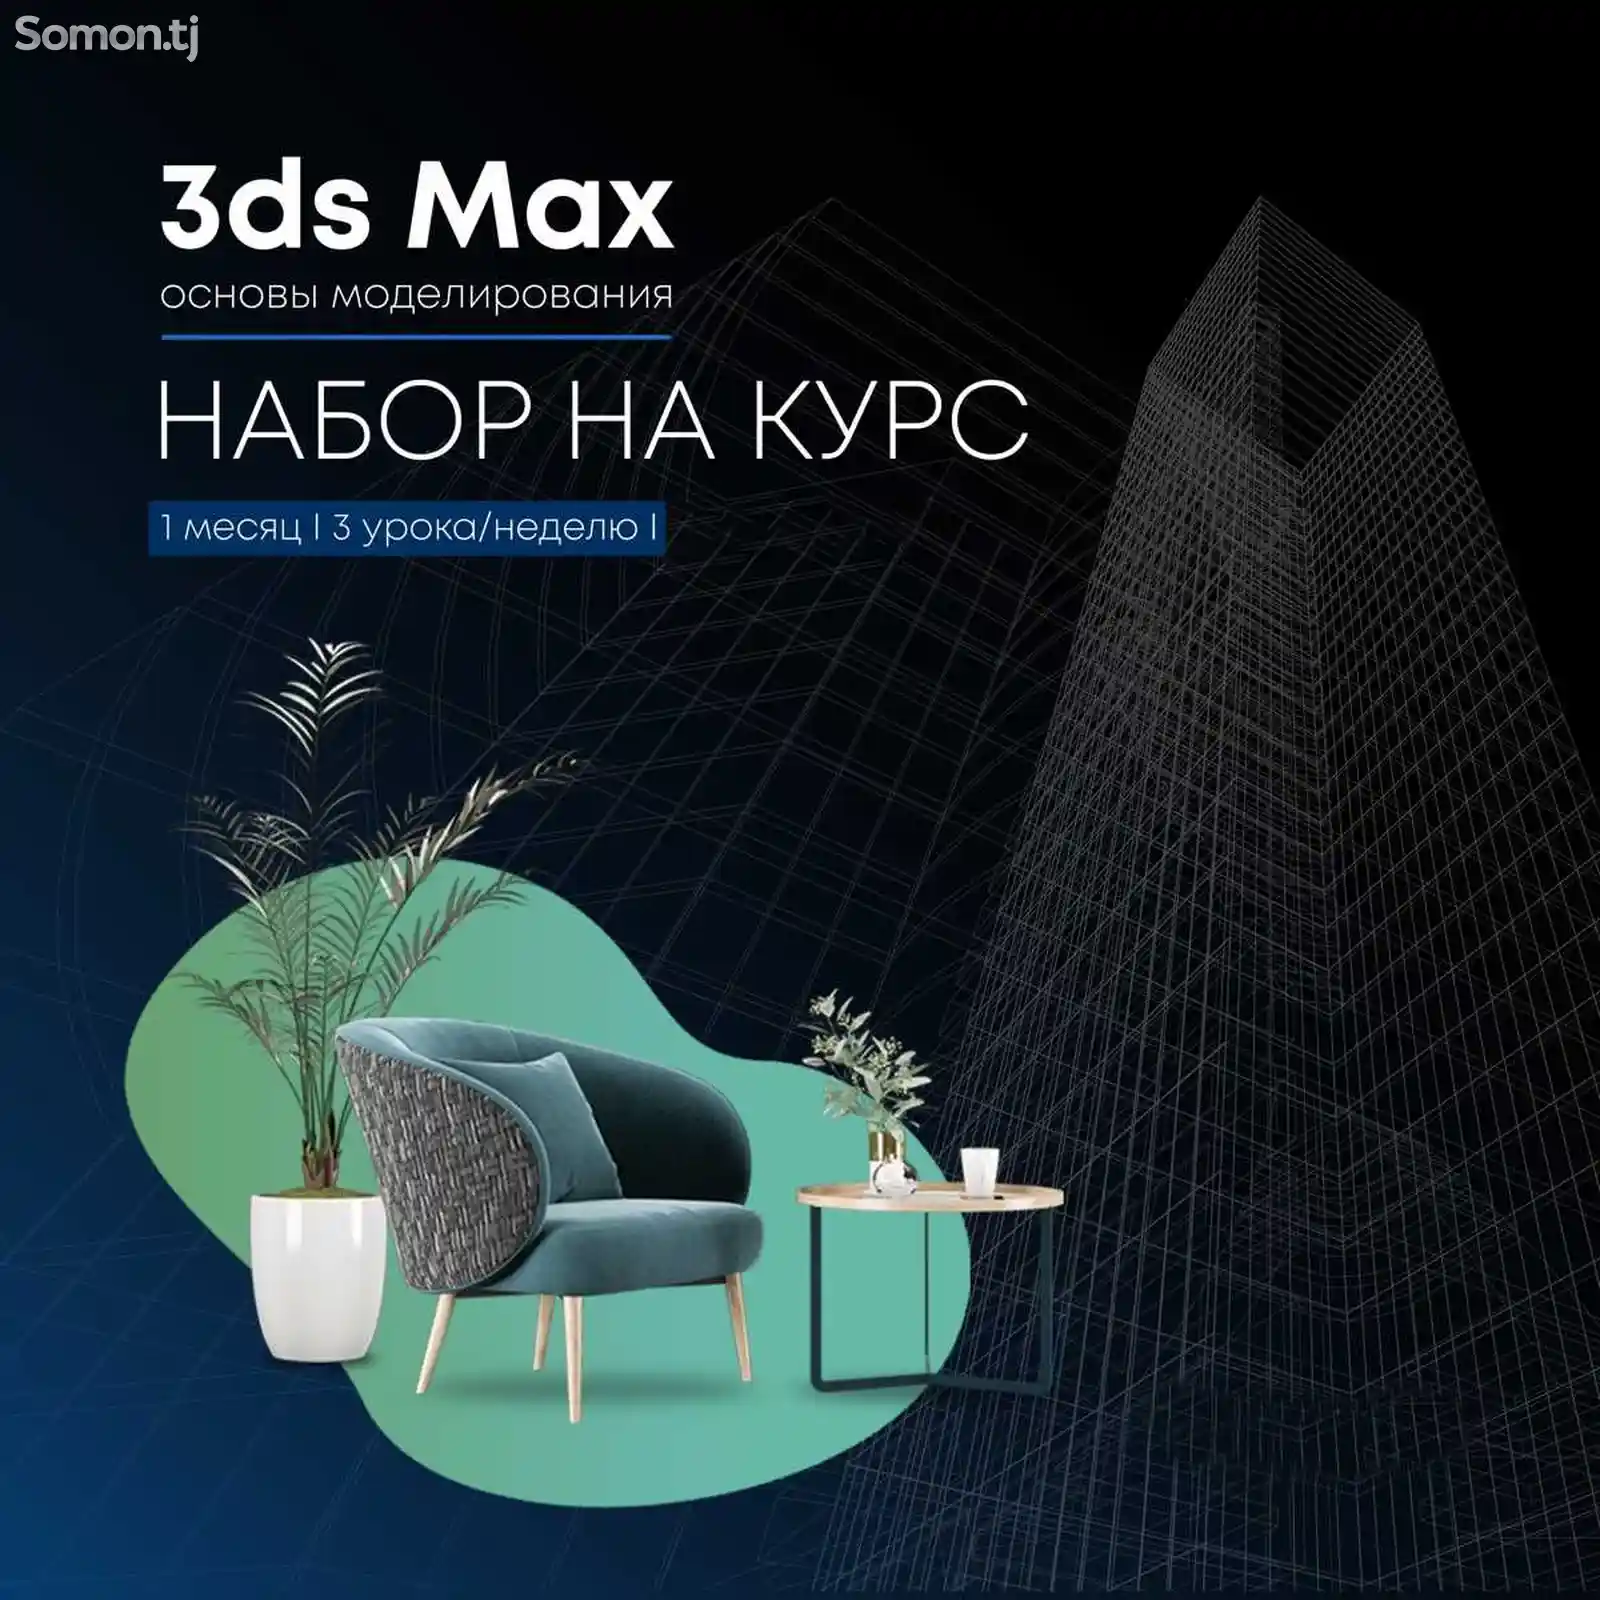 Начальный курс 3Д Макс